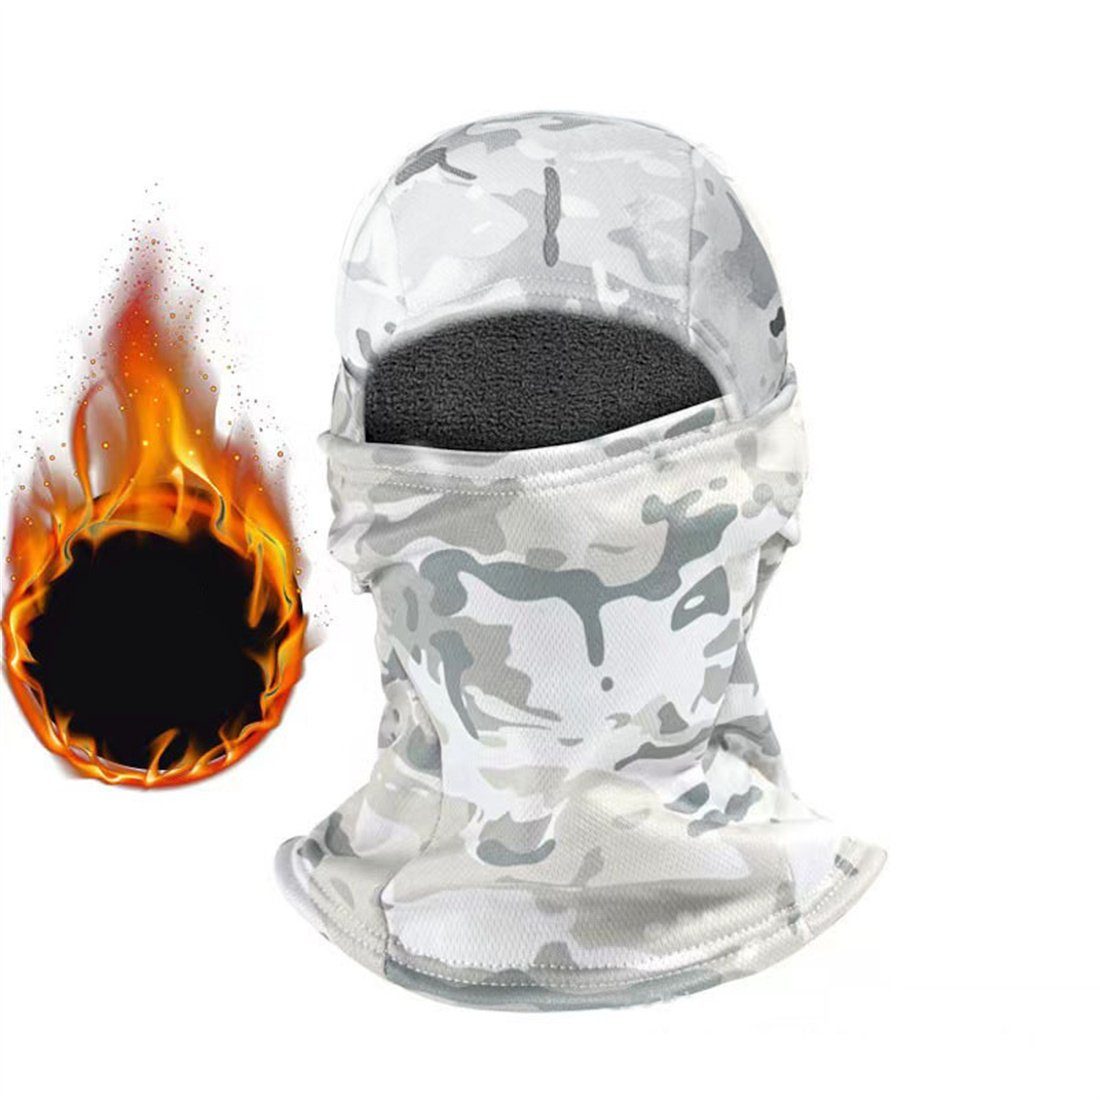 DÖRÖY Sturmhaube Winter-Ski-Maske, Outdoor-Sport Radfahren Kopfbedeckung, unisex Weiß | Sturmhauben